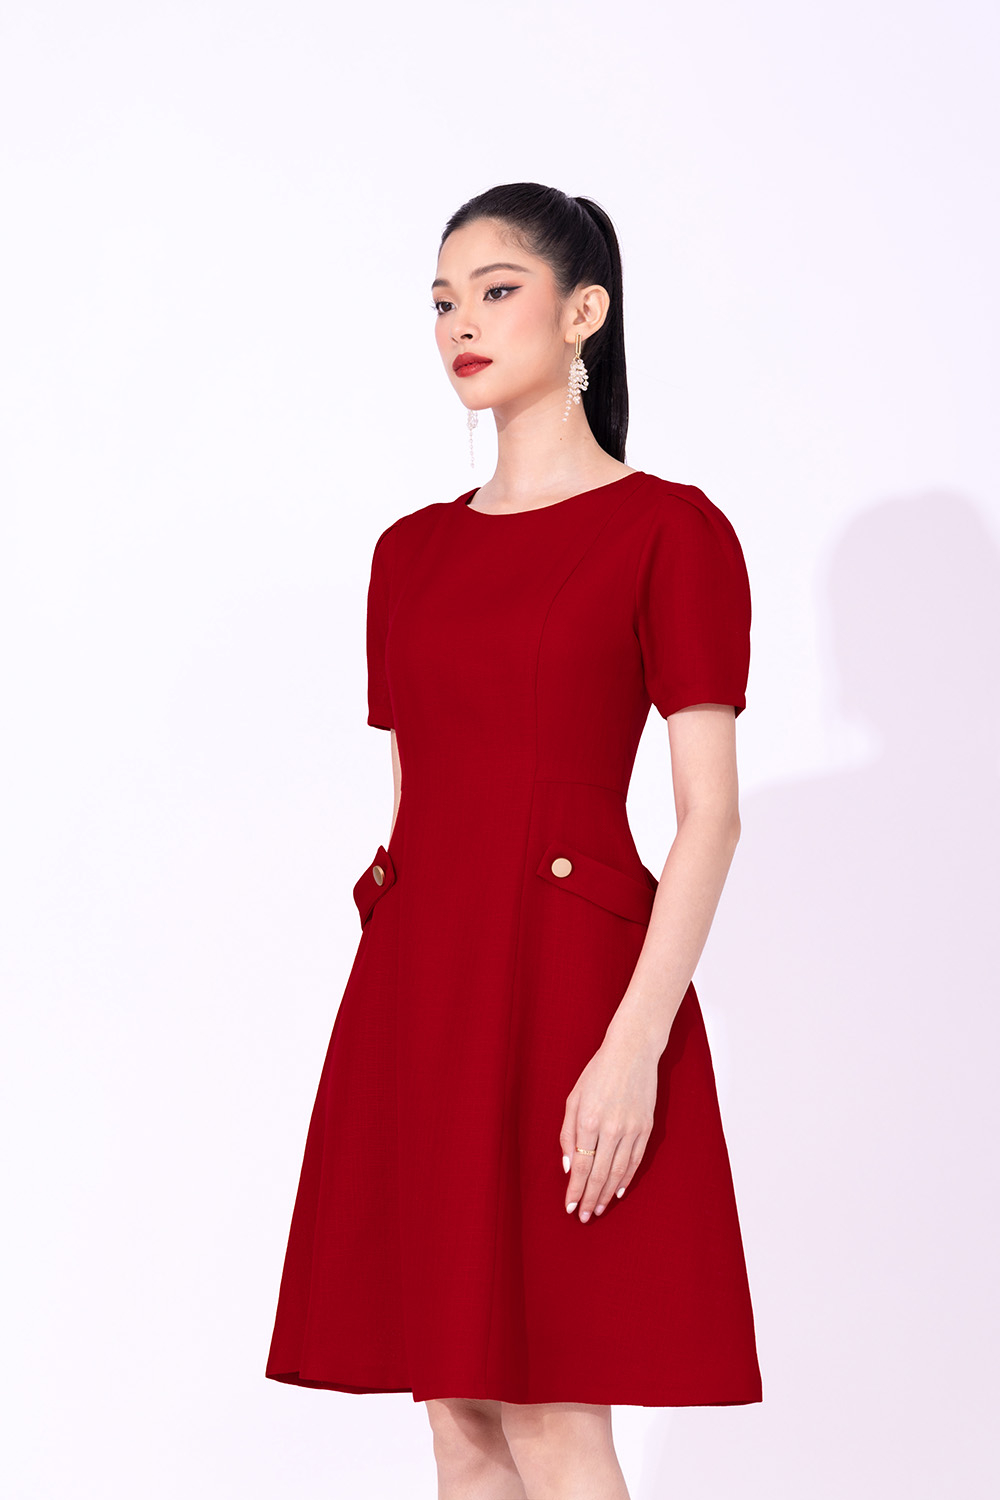 Mới) Mã A0691 Giá 1170K: Váy Đầm Liền Thân Dáng Dài Nữ Gutdn Big Size Ngoại  Cỡ Dài Tay Họa Tiết Hoa Thời Trang Nữ Chất Liệu G04 Sản Phẩm Mới, (Miễn